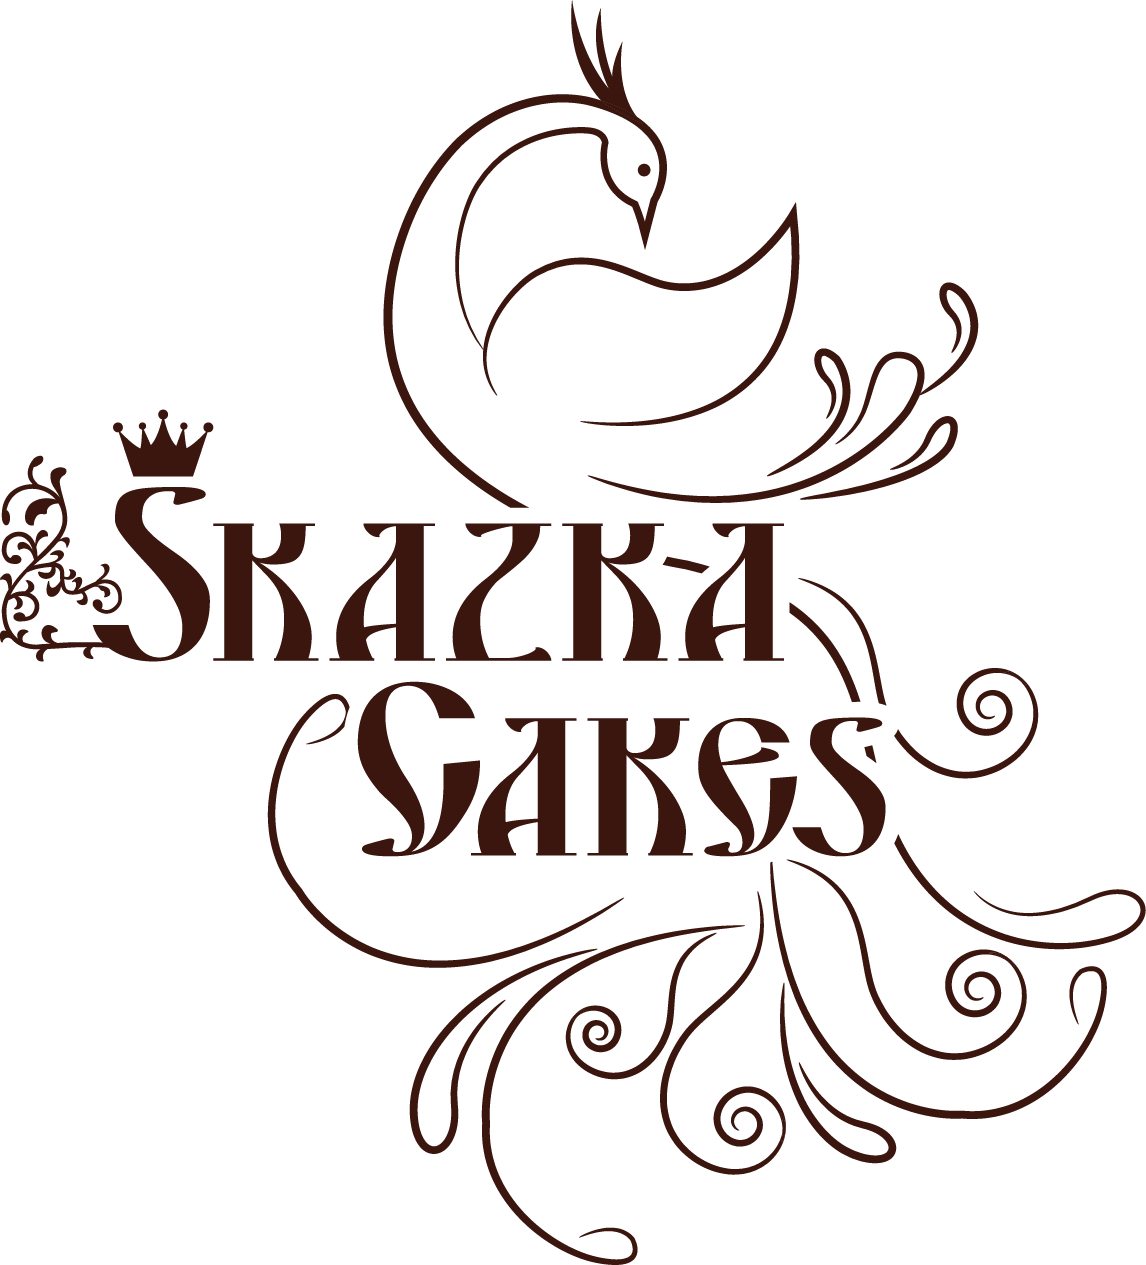 Skazka Cakes LLC